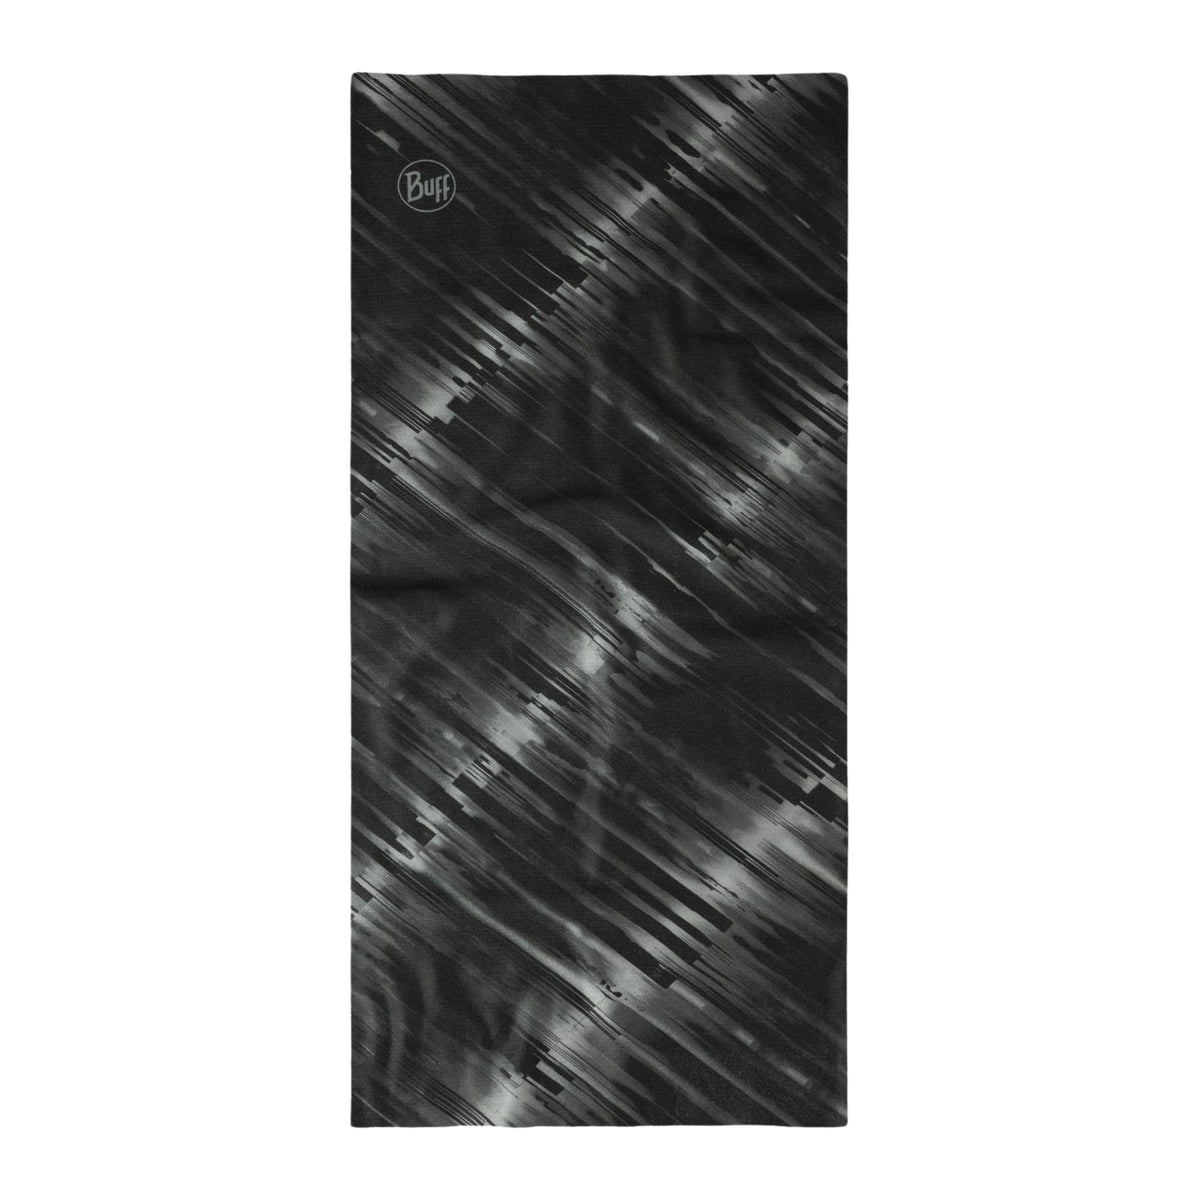 BUFF | COOLNET UV NECKWEAR - BLACK JARU - Scaldacollo con protezione solare